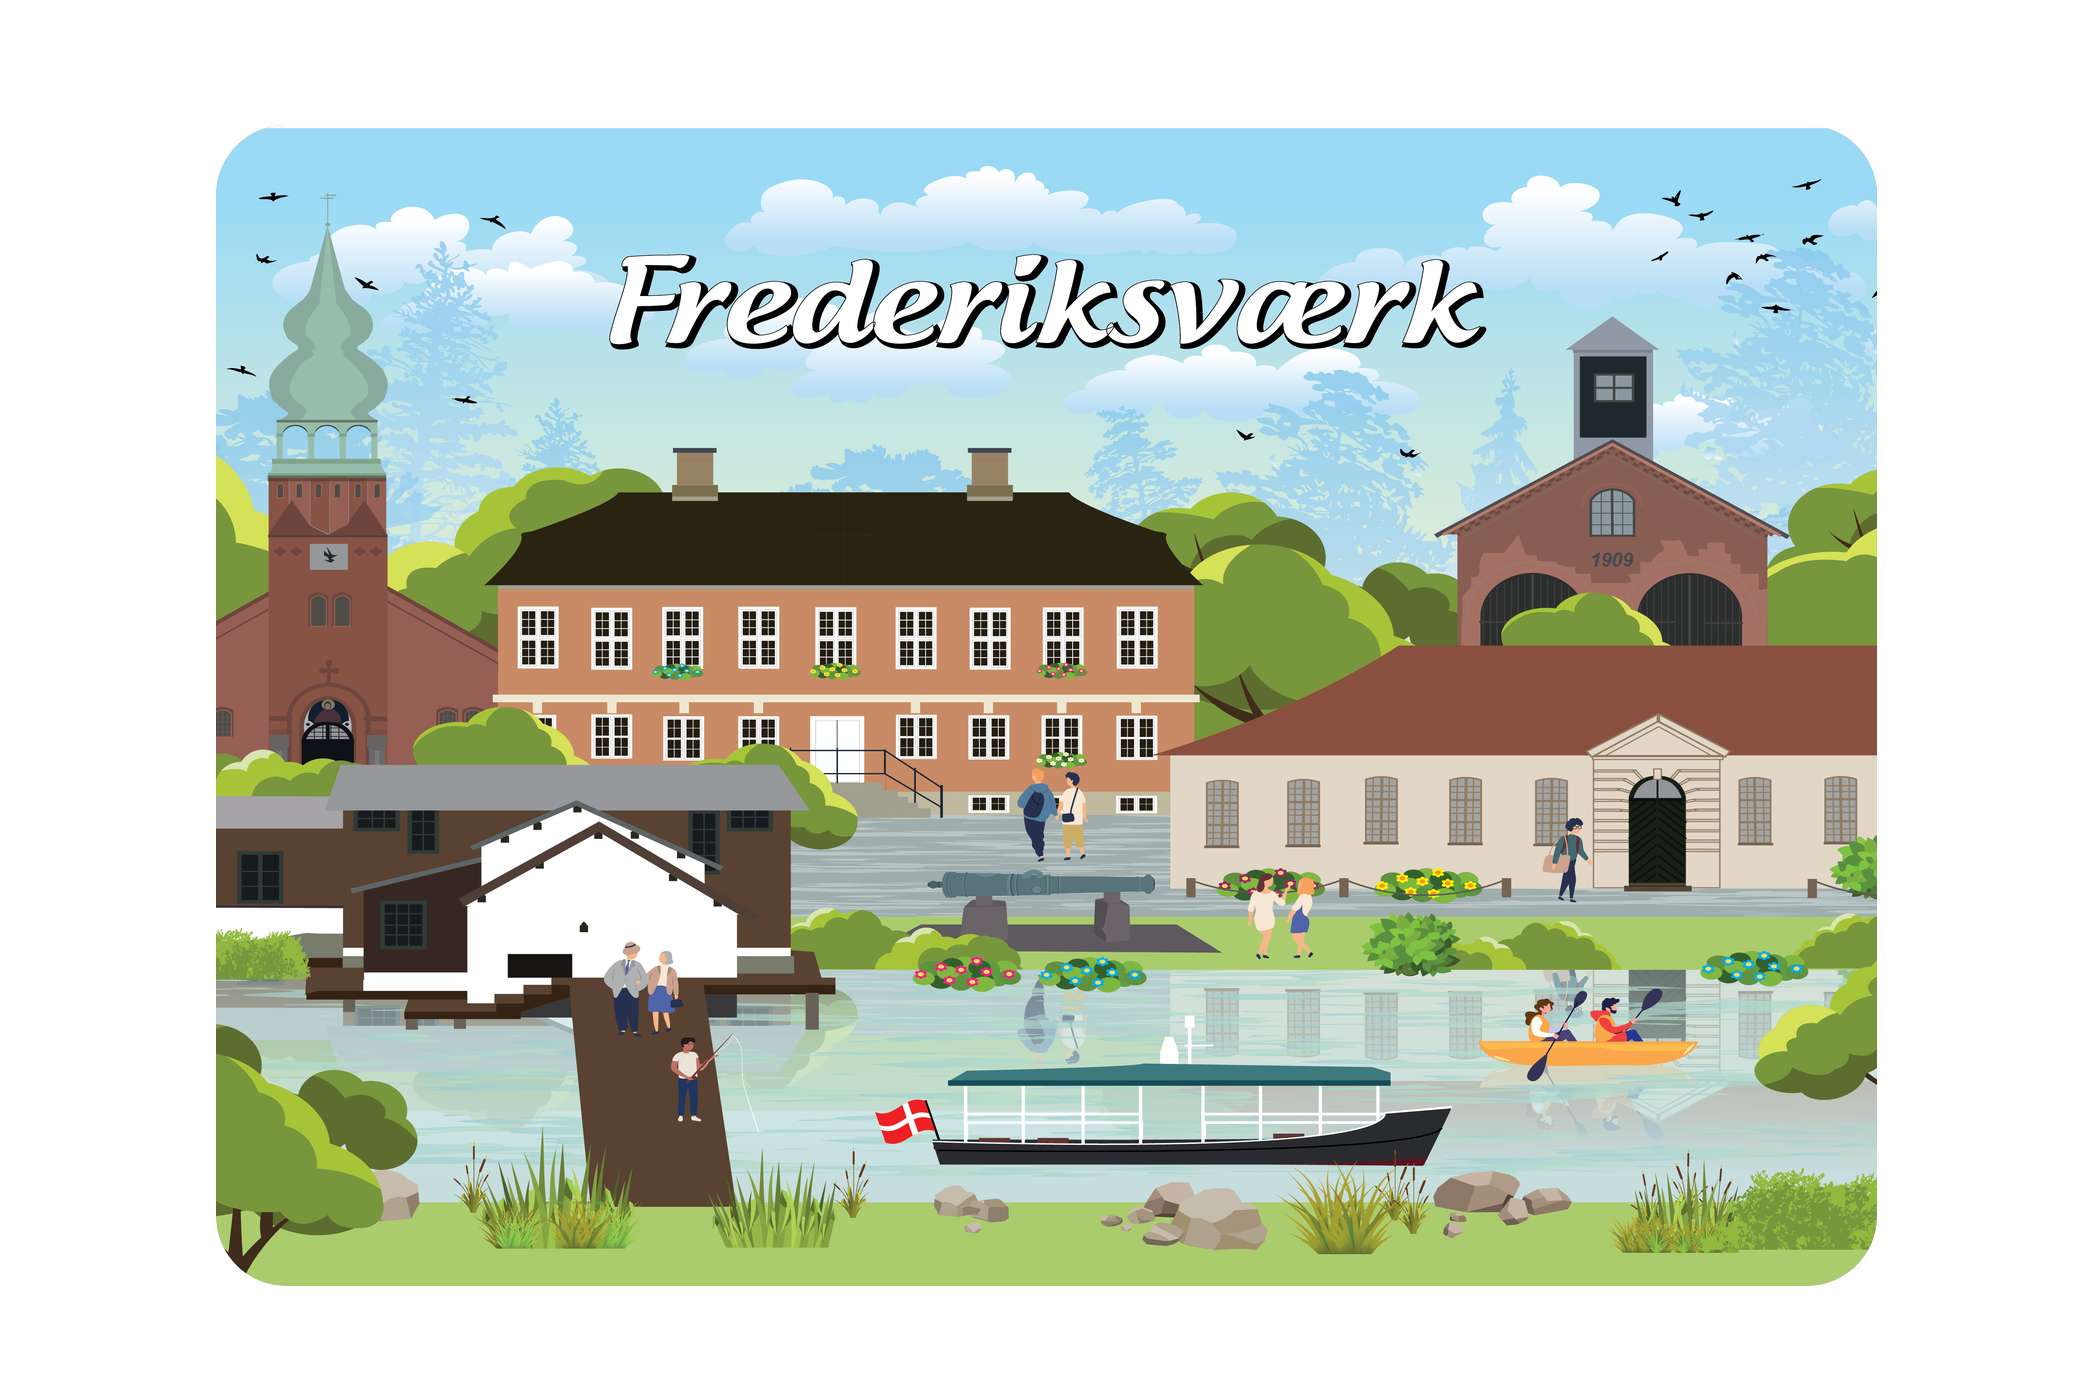 Frederiksværk - Bykoncept